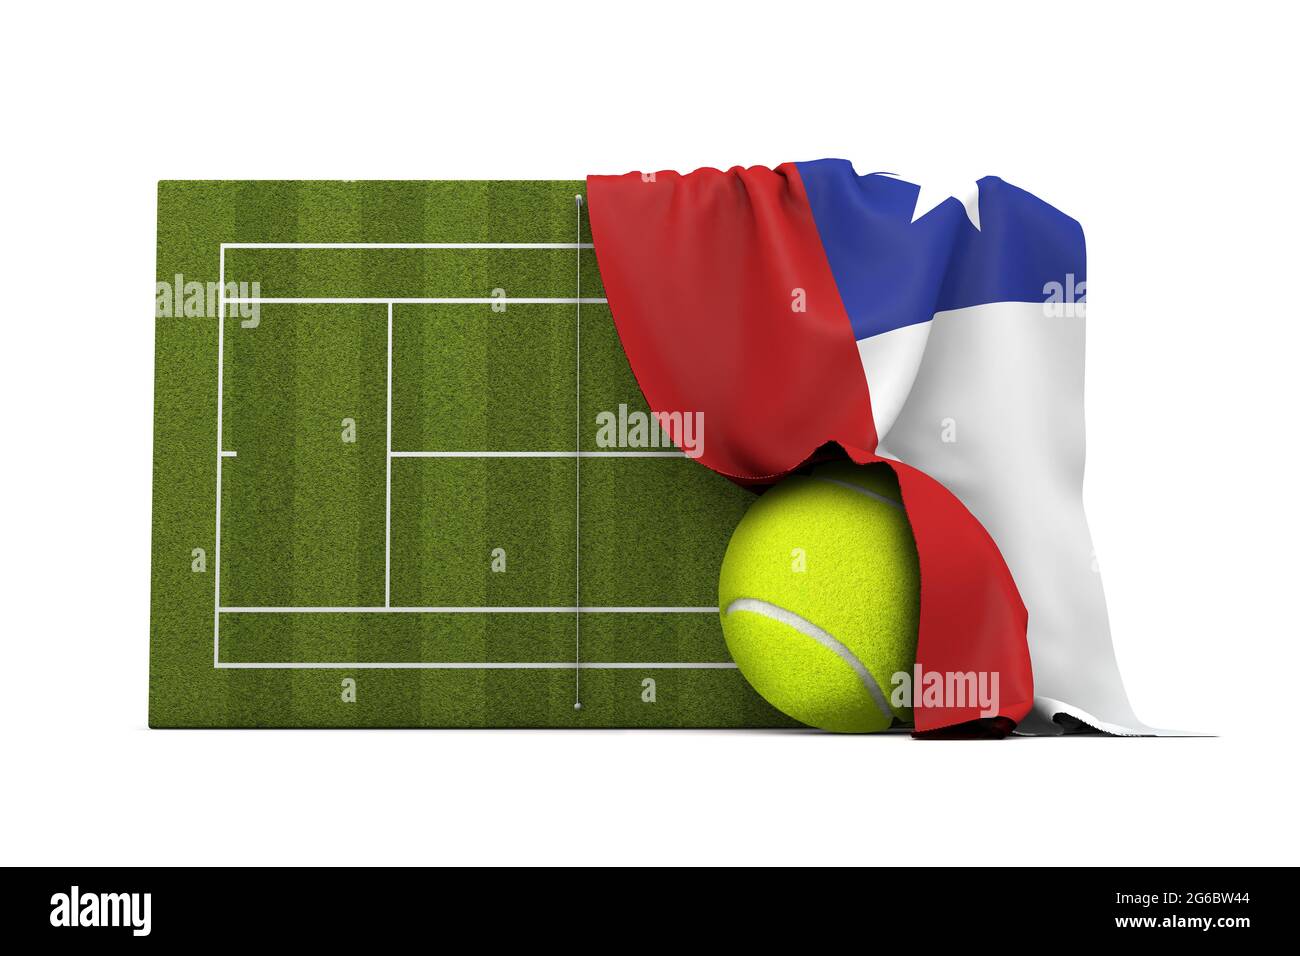 Drapeau du Chili drapé sur un court de tennis en herbe et un ballon. Rendu 3D Banque D'Images